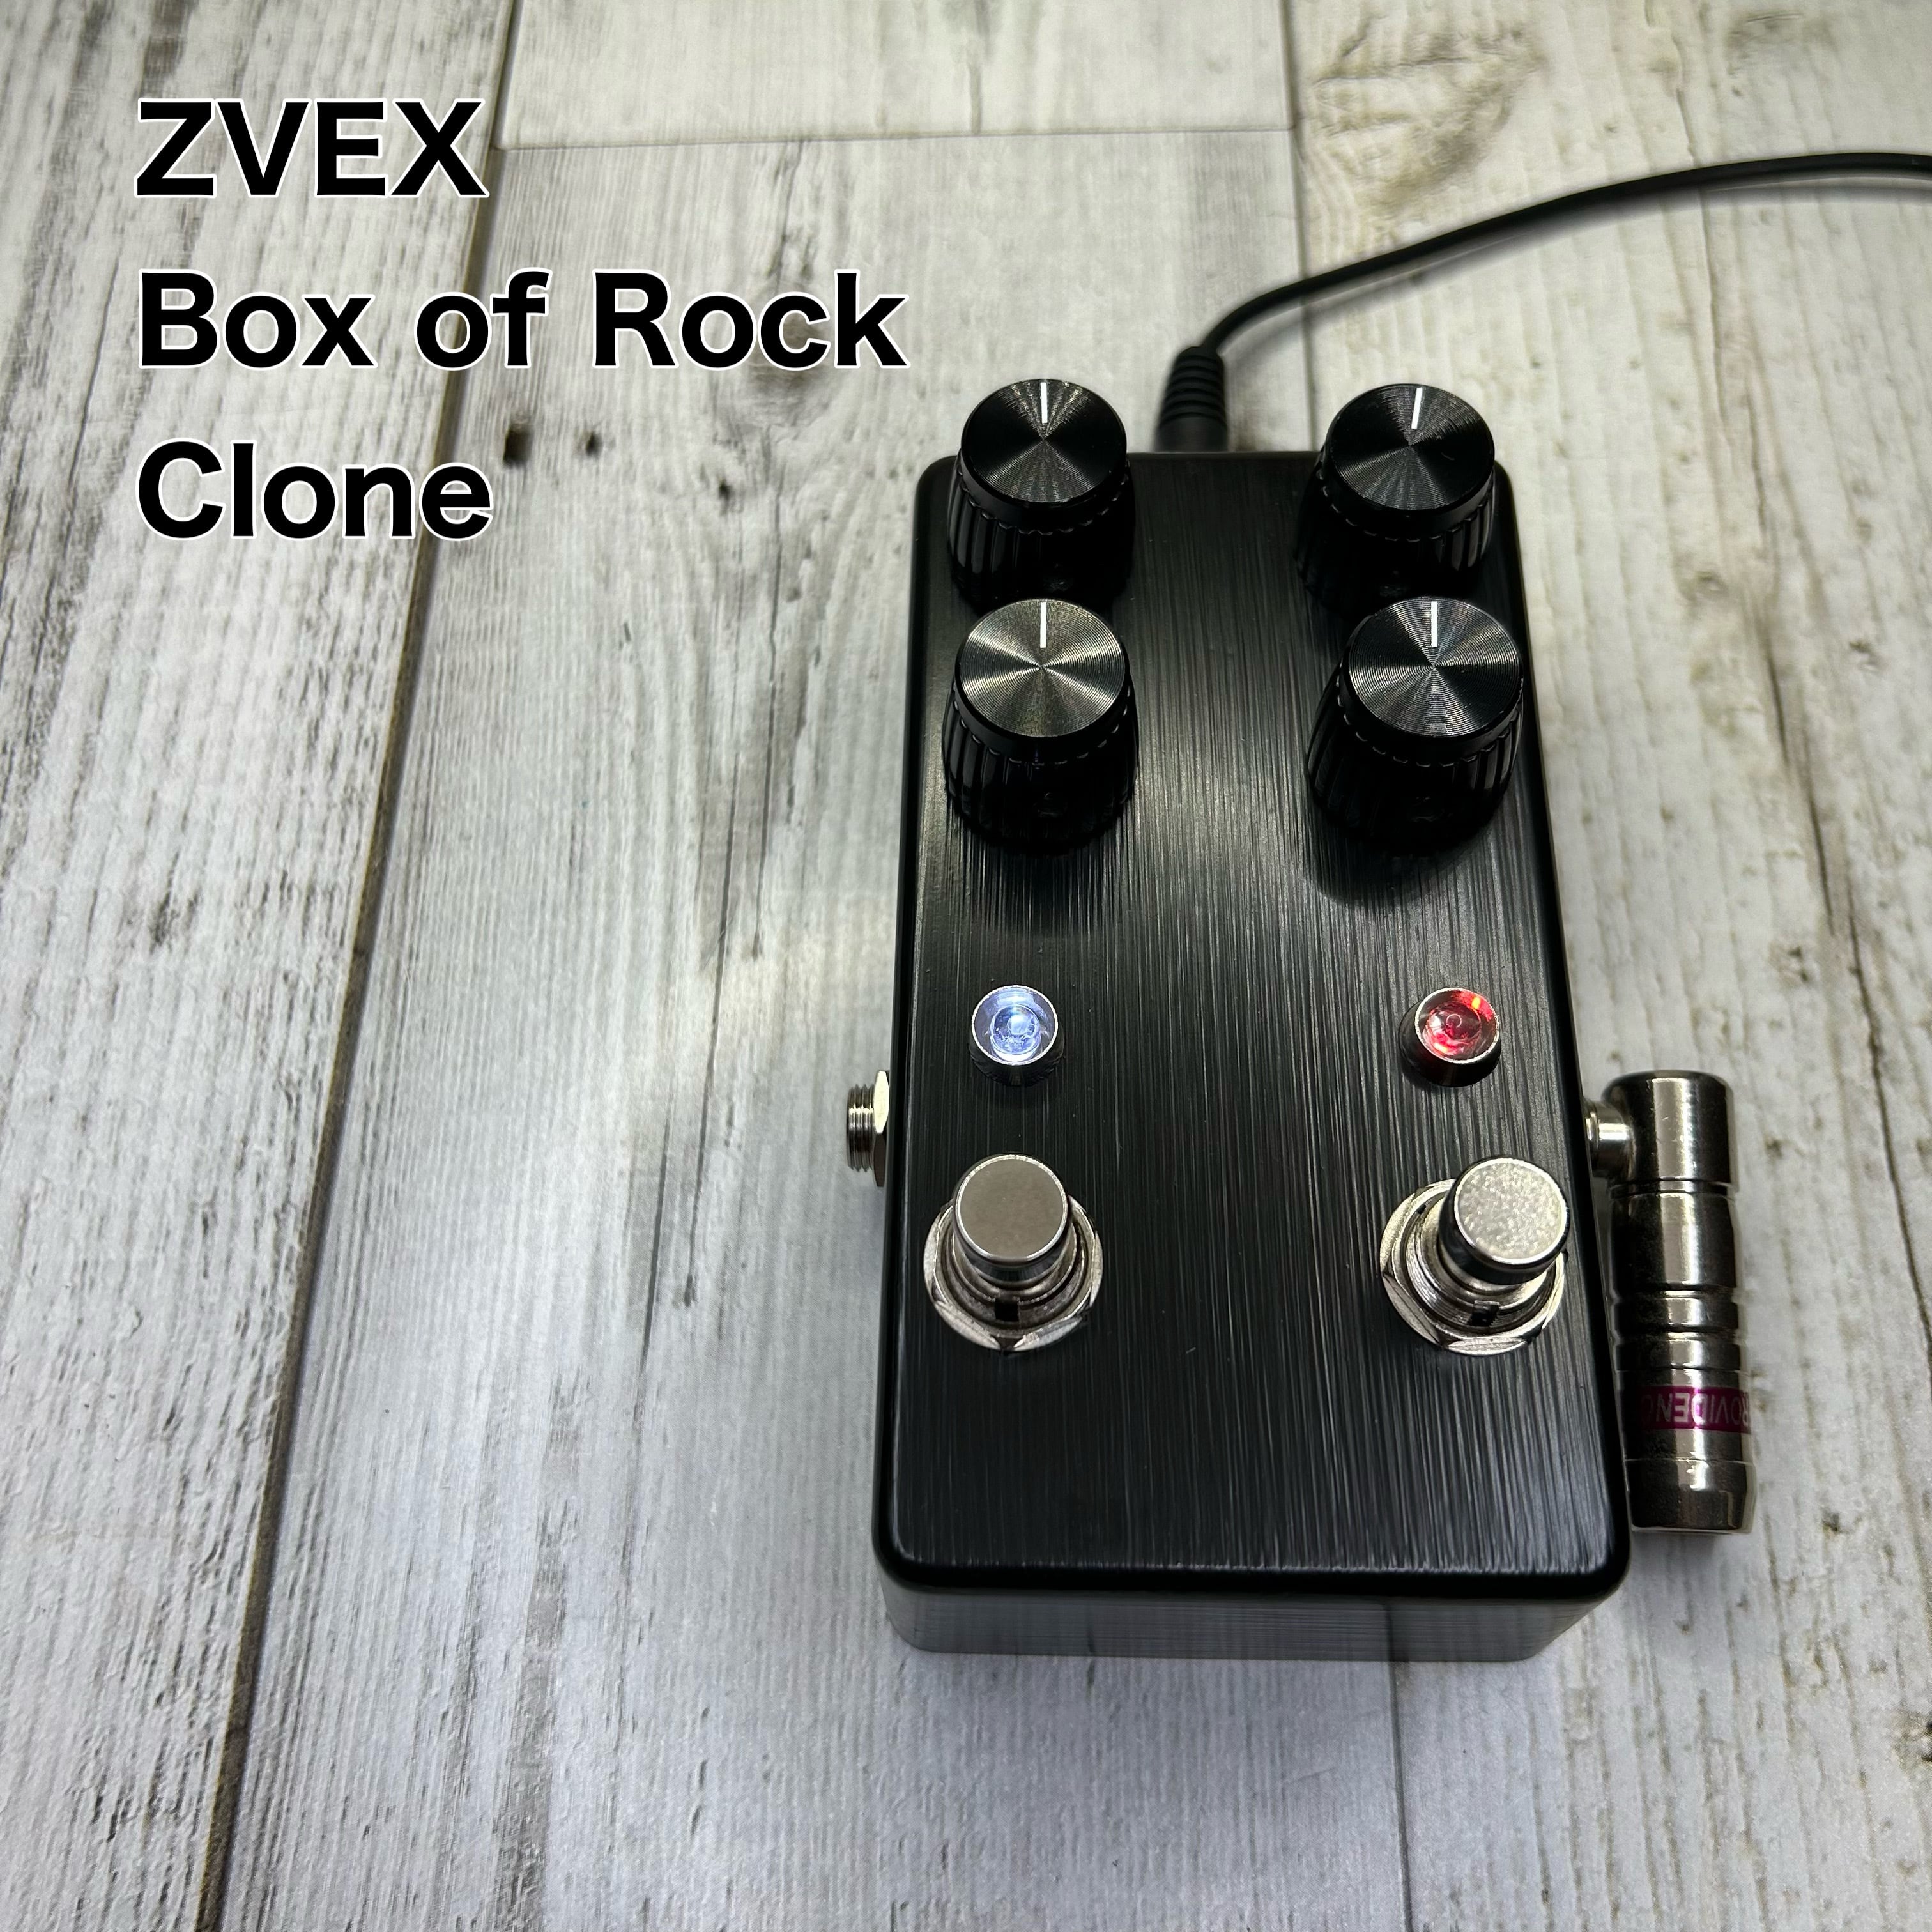 ZVEX Box of Rock clone